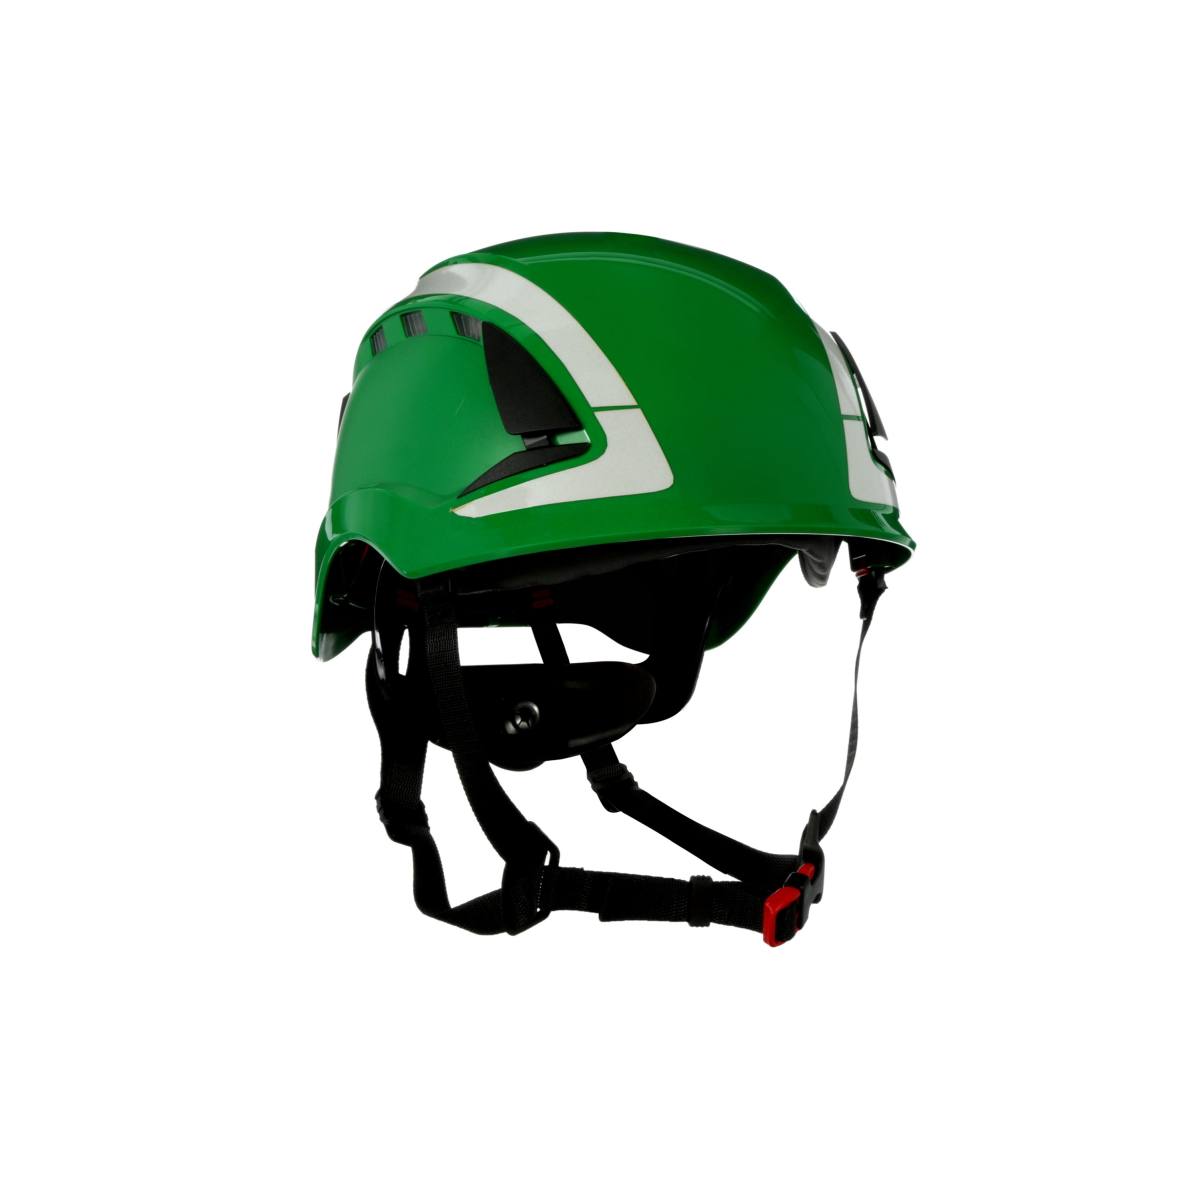 3M SecureFit casque de protection, X5003V-CE, vert, ventilé, réfléchissant, CE